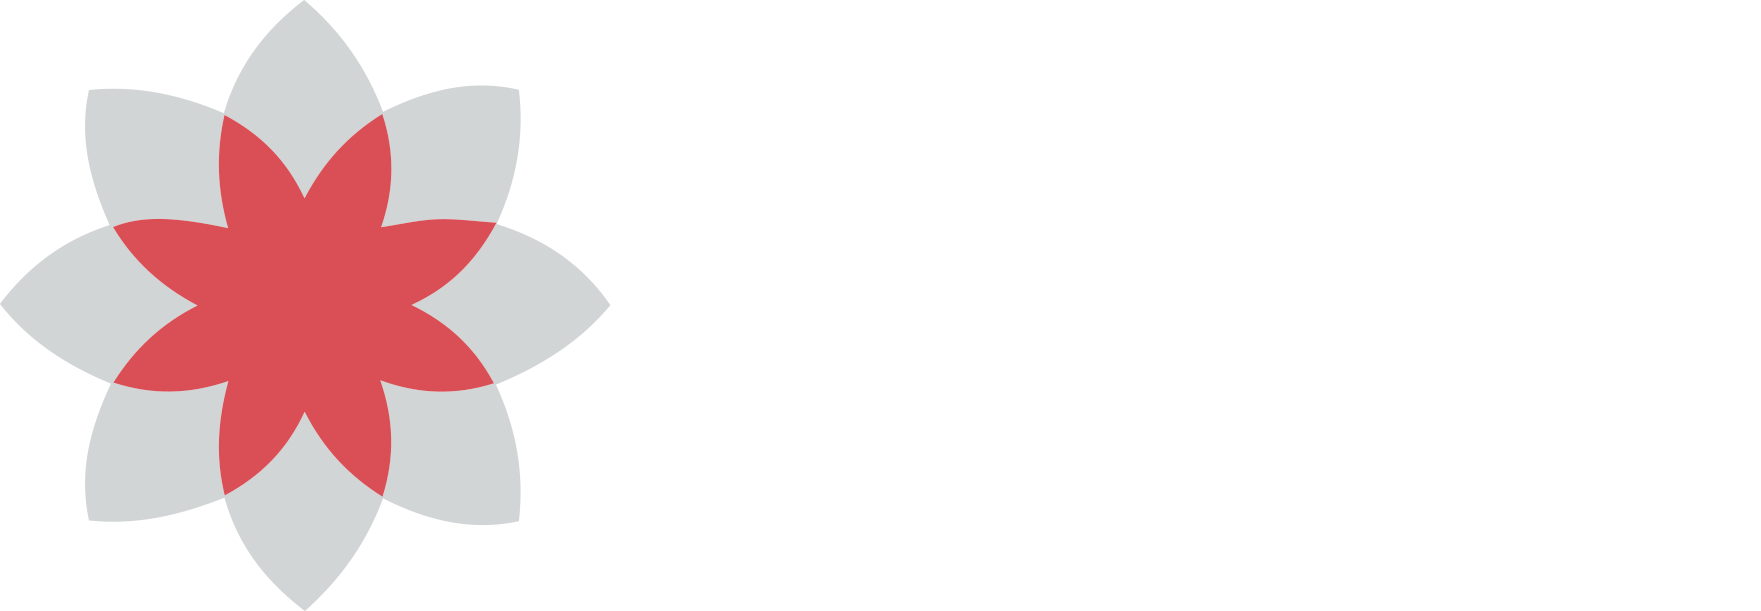 RMF Logo